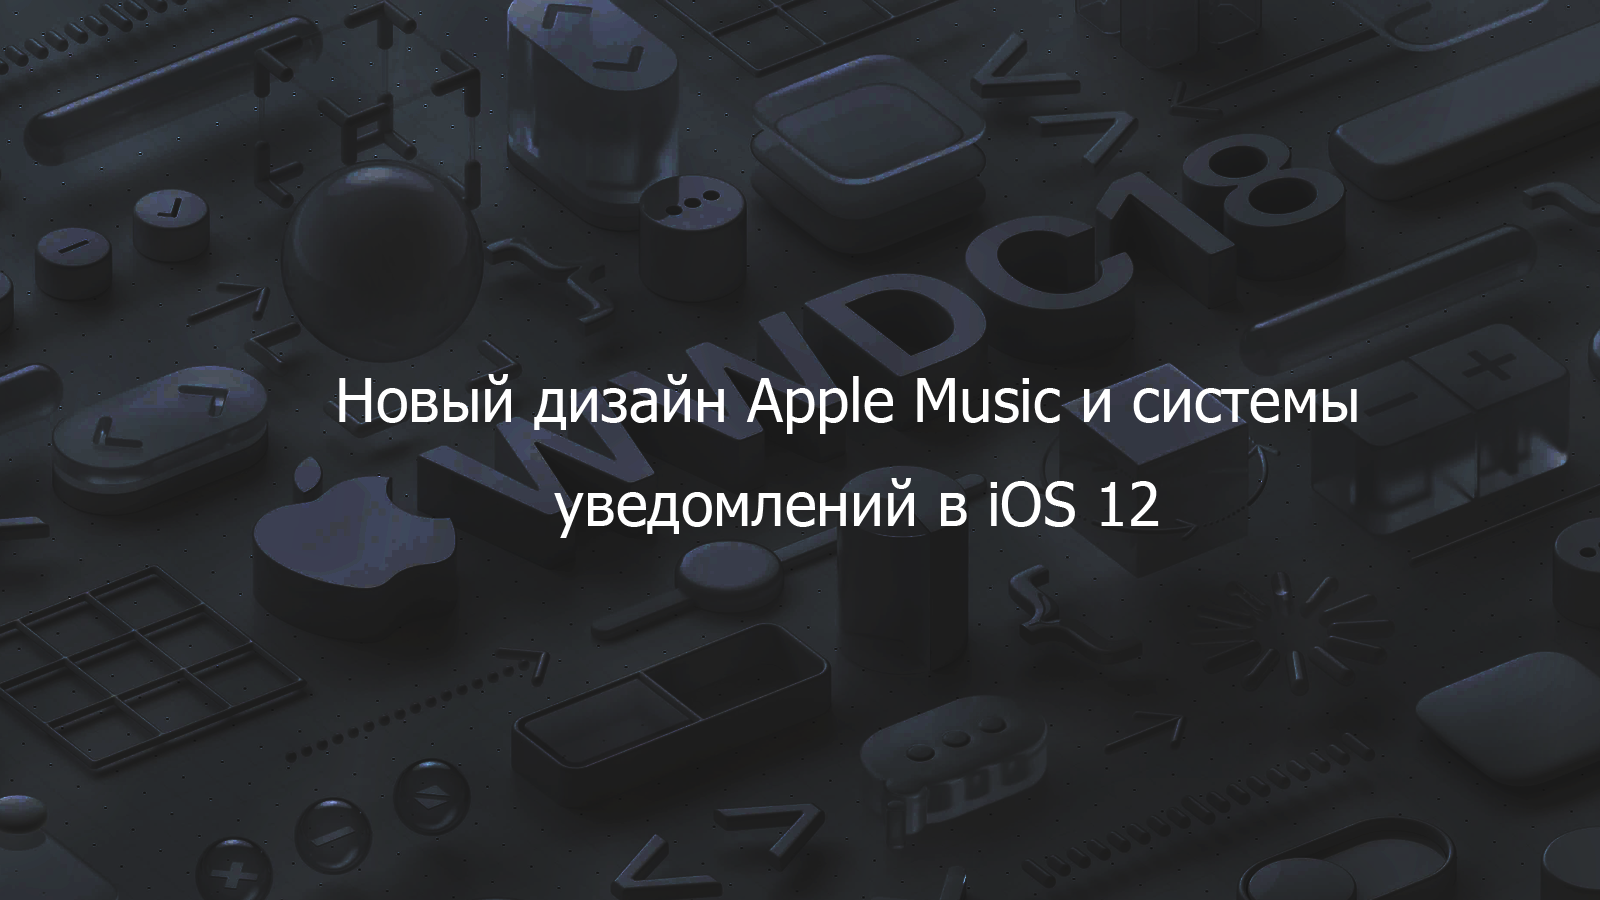 Появились макеты нового дизайна Apple Music и системы уведомлений в іOS 12